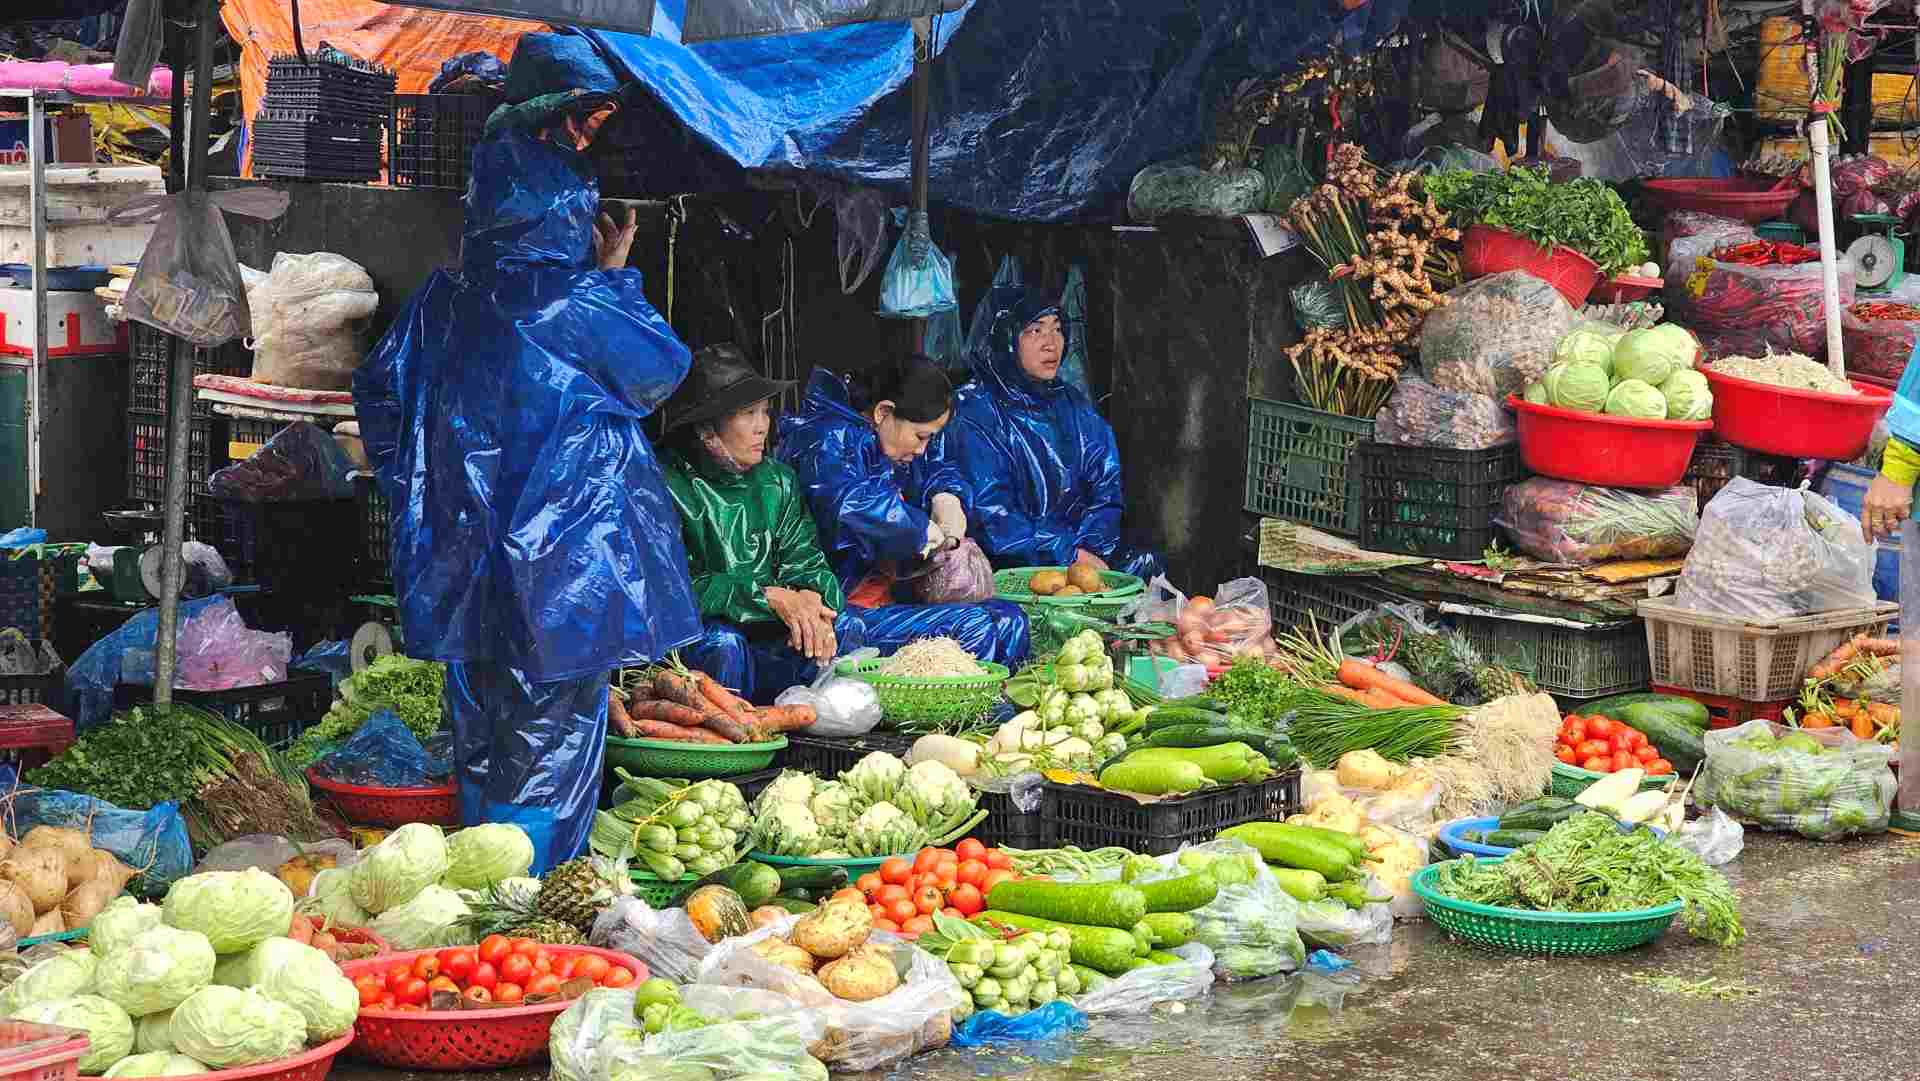 Chợ Đông Ba phía đường Chương Dương, các tiểu thương miệt mài bán hàng, ai nấy đều mặc trên mình chiếc áo mưa. 